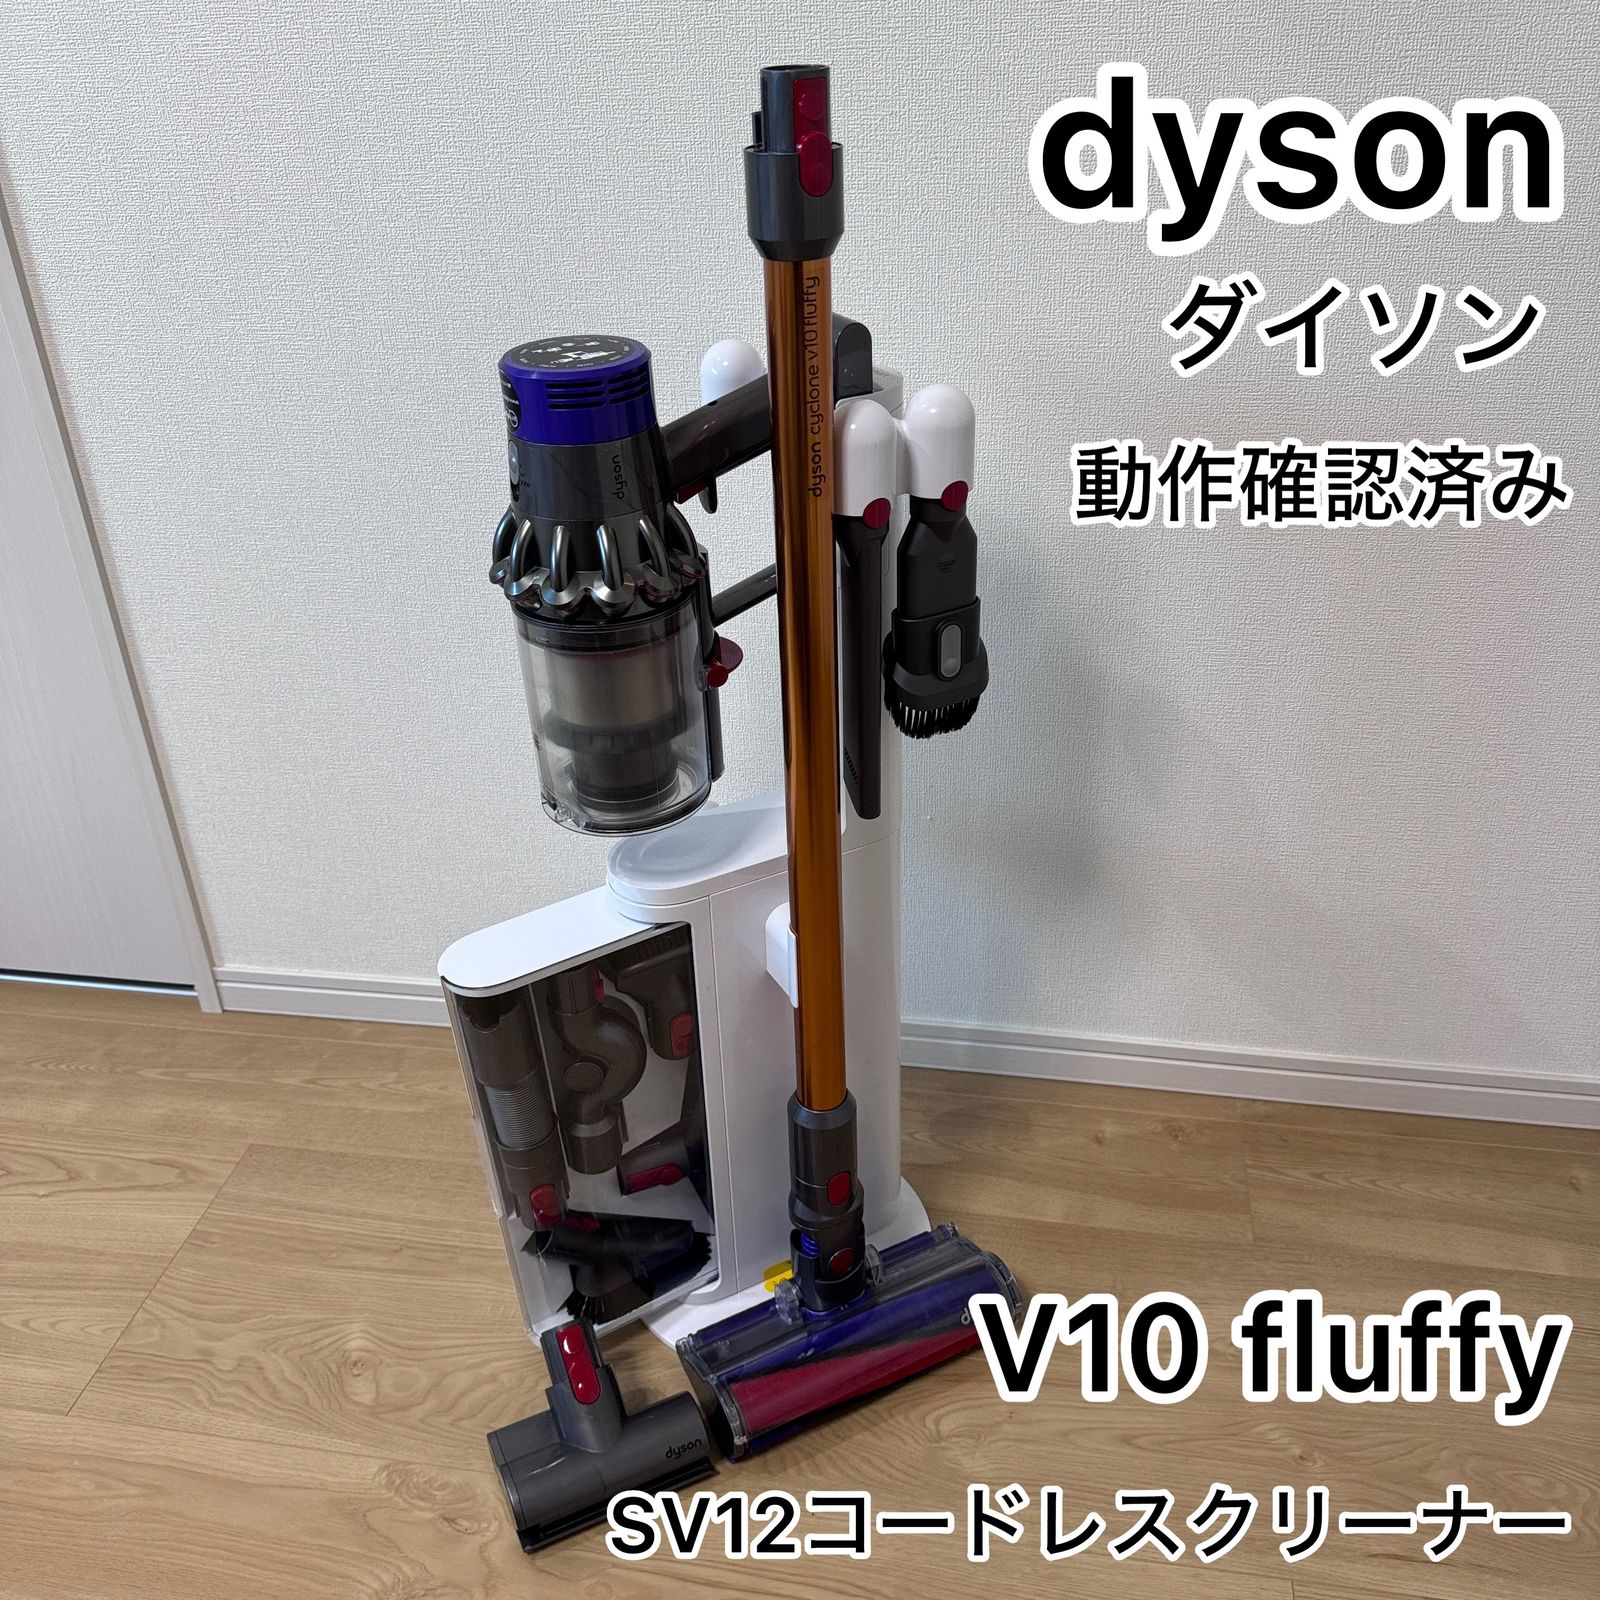 ダイソンサイクロン V10 Fluffyコードレス掃除機 - 掃除機・クリーナー